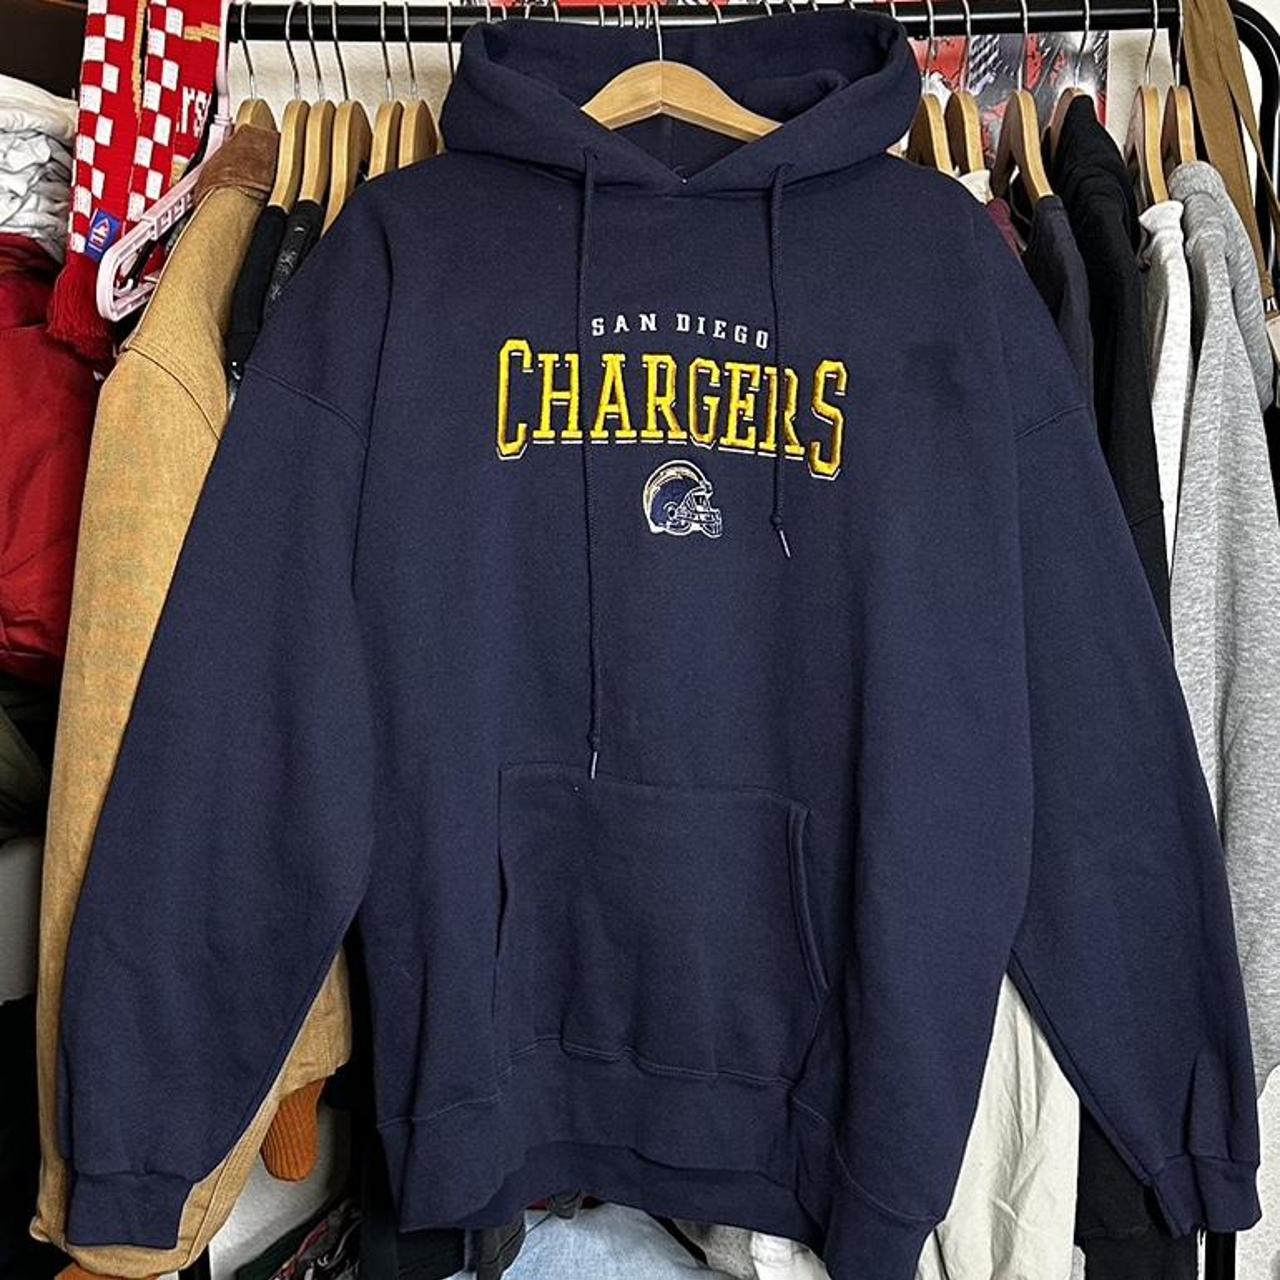 Vintage lee San Diego chargers hoodie size XL... - Depop